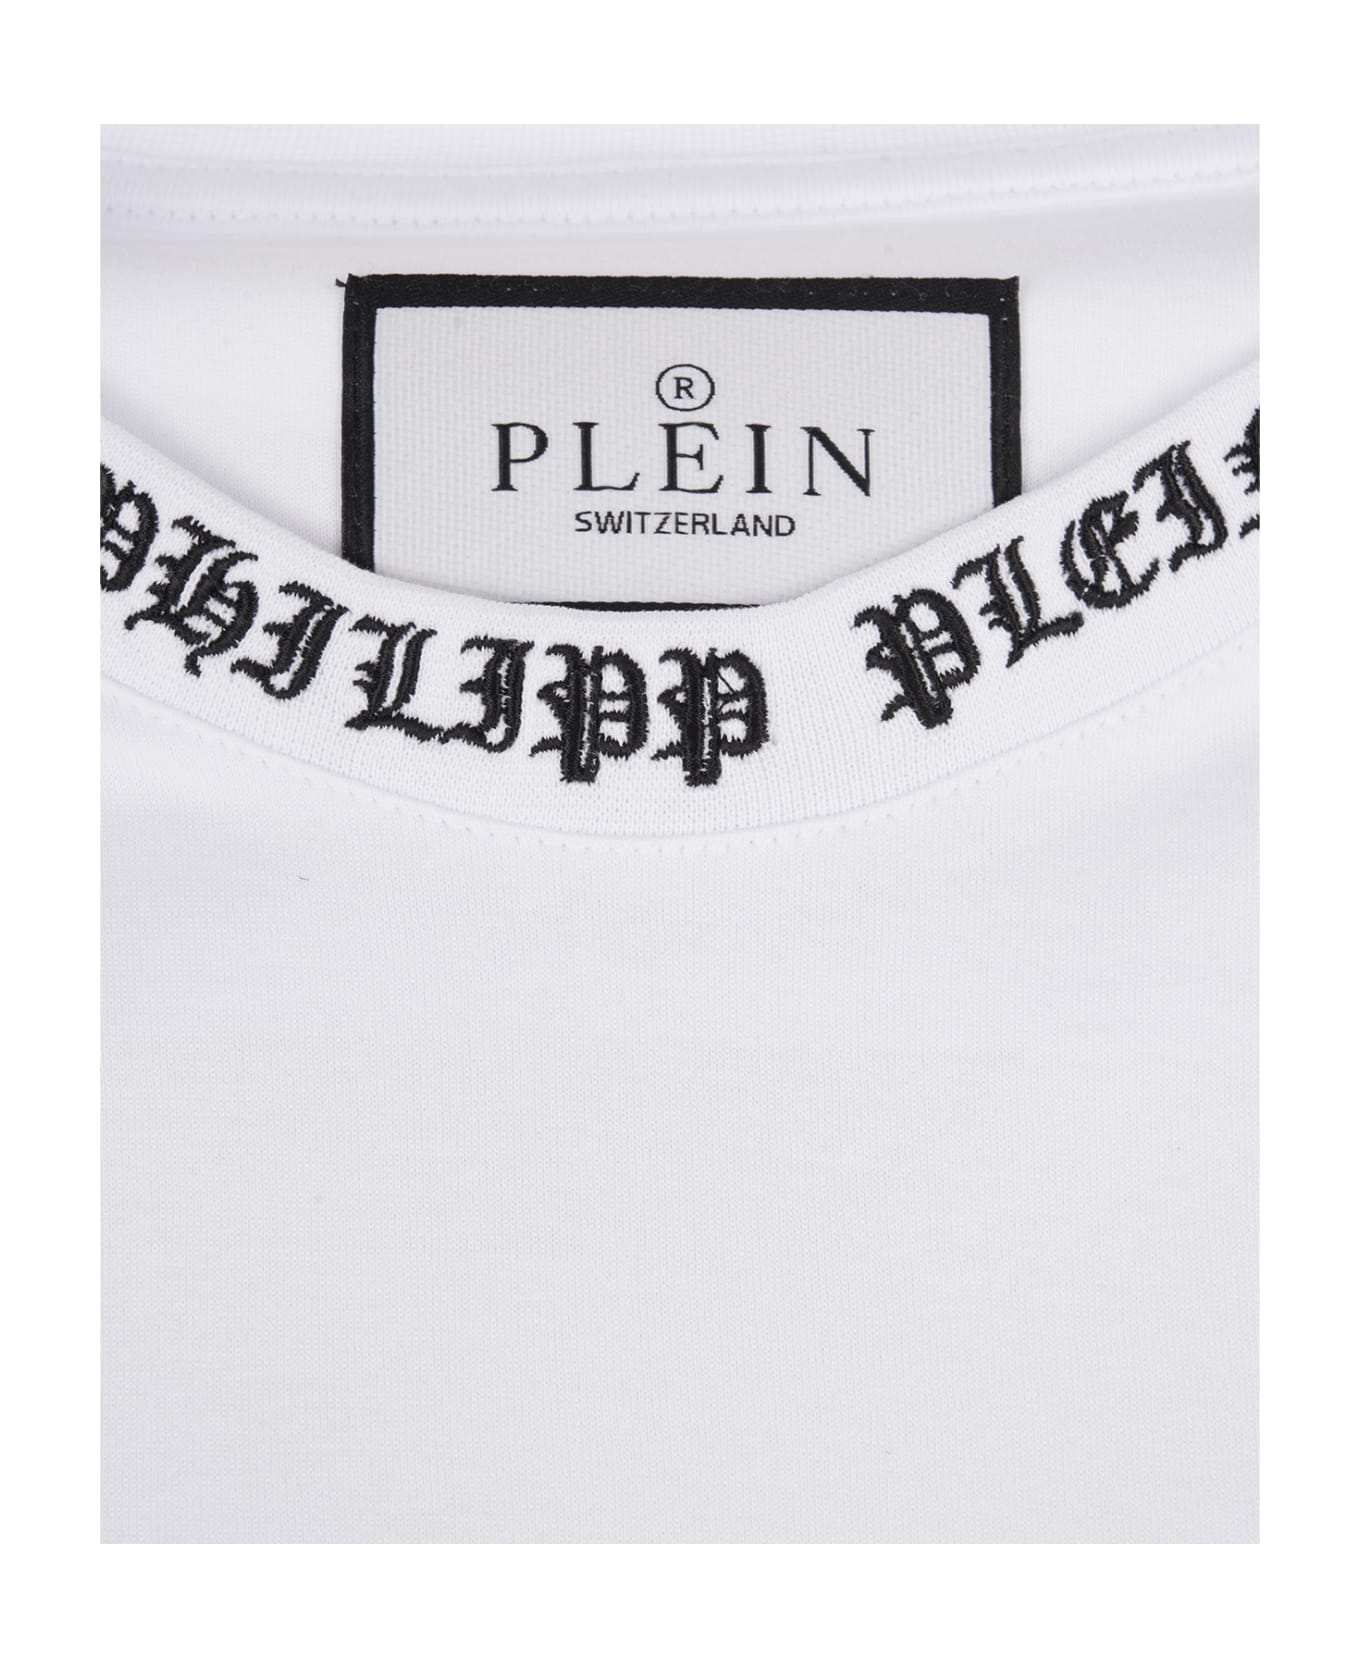 Philipp Plein White T-shirt With Embroidered Logo - White